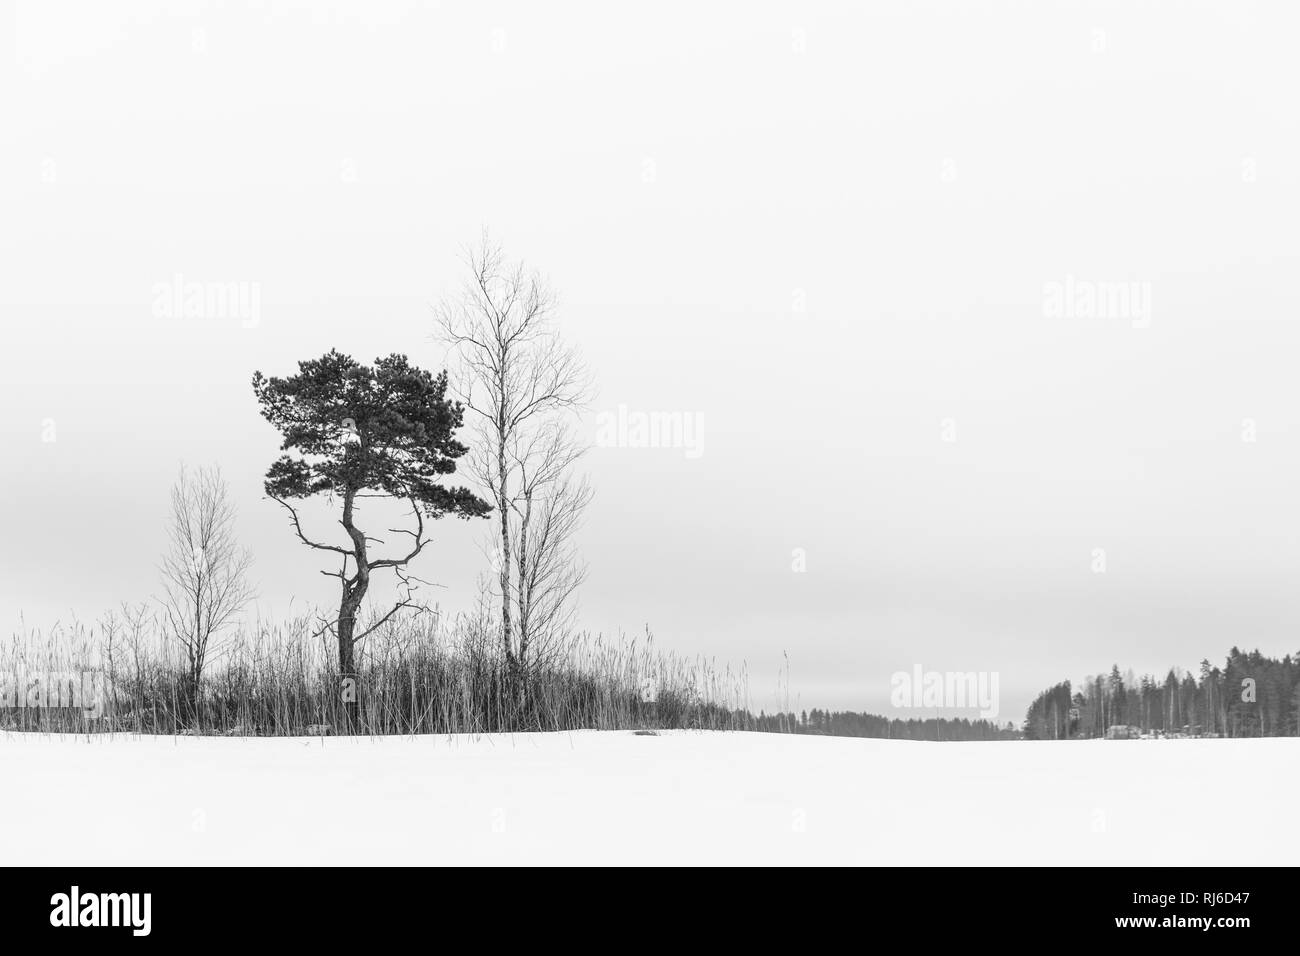 Finnland, Siamaa-Gebiet, Landschaft mit Schnee und Bäumen im Winter Banque D'Images